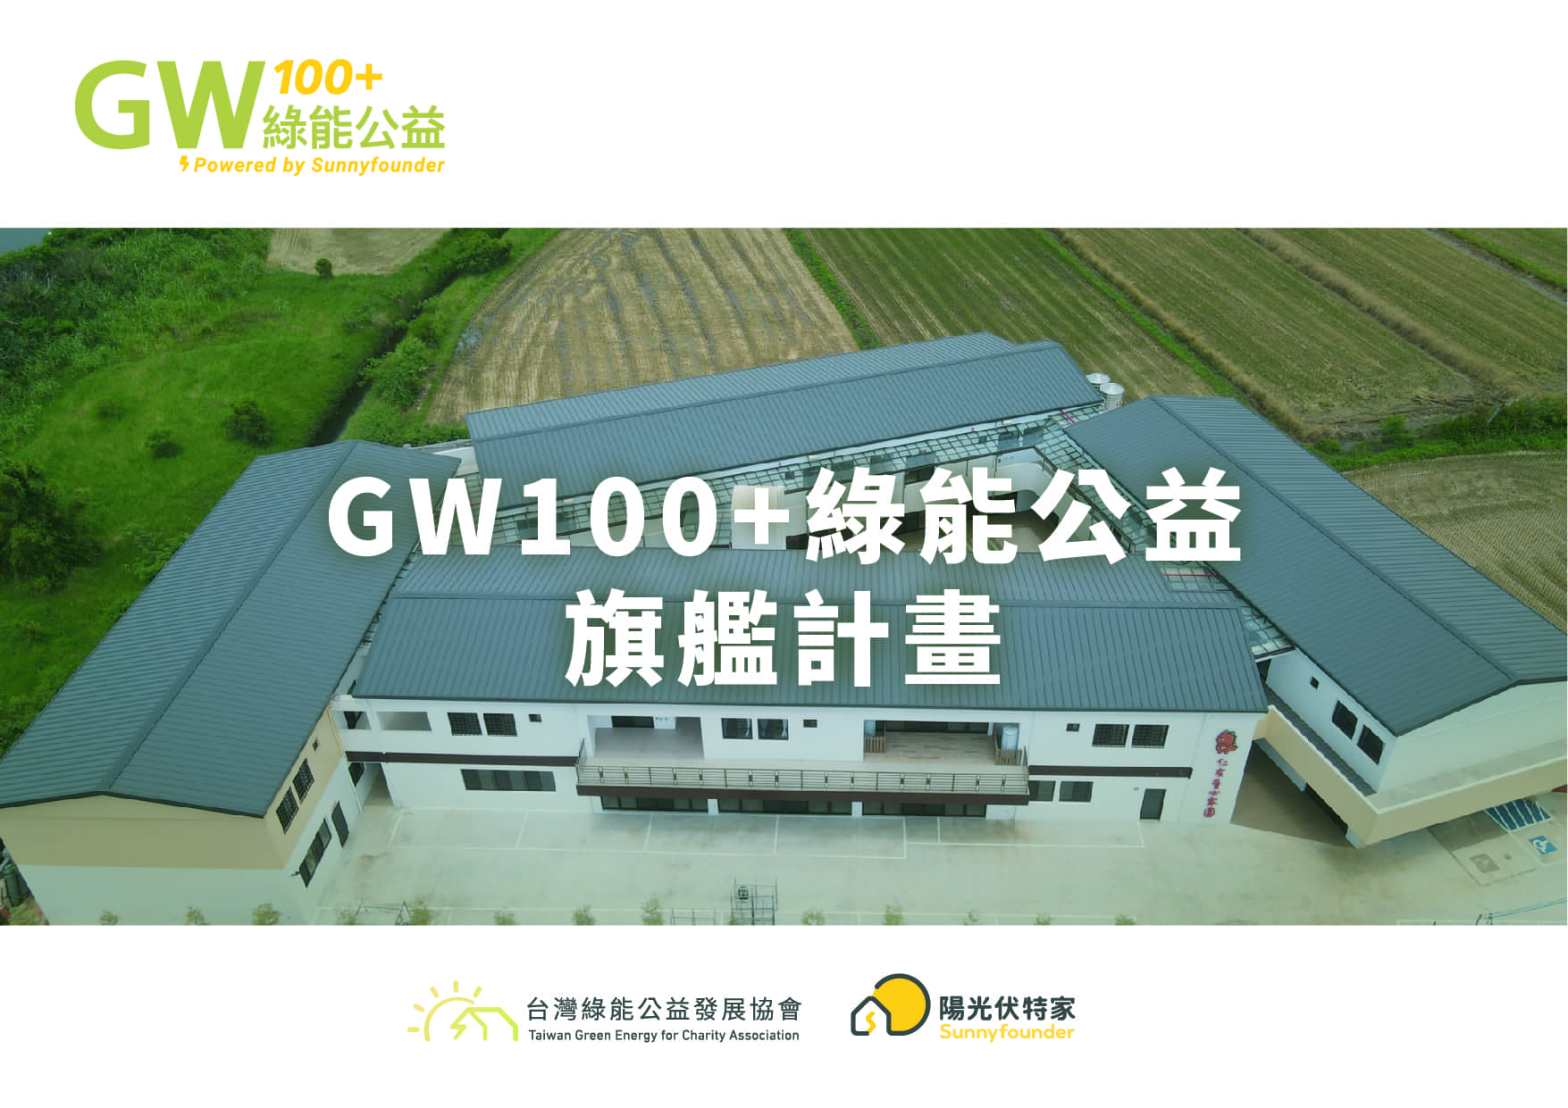 GW100真善美旗艦計畫